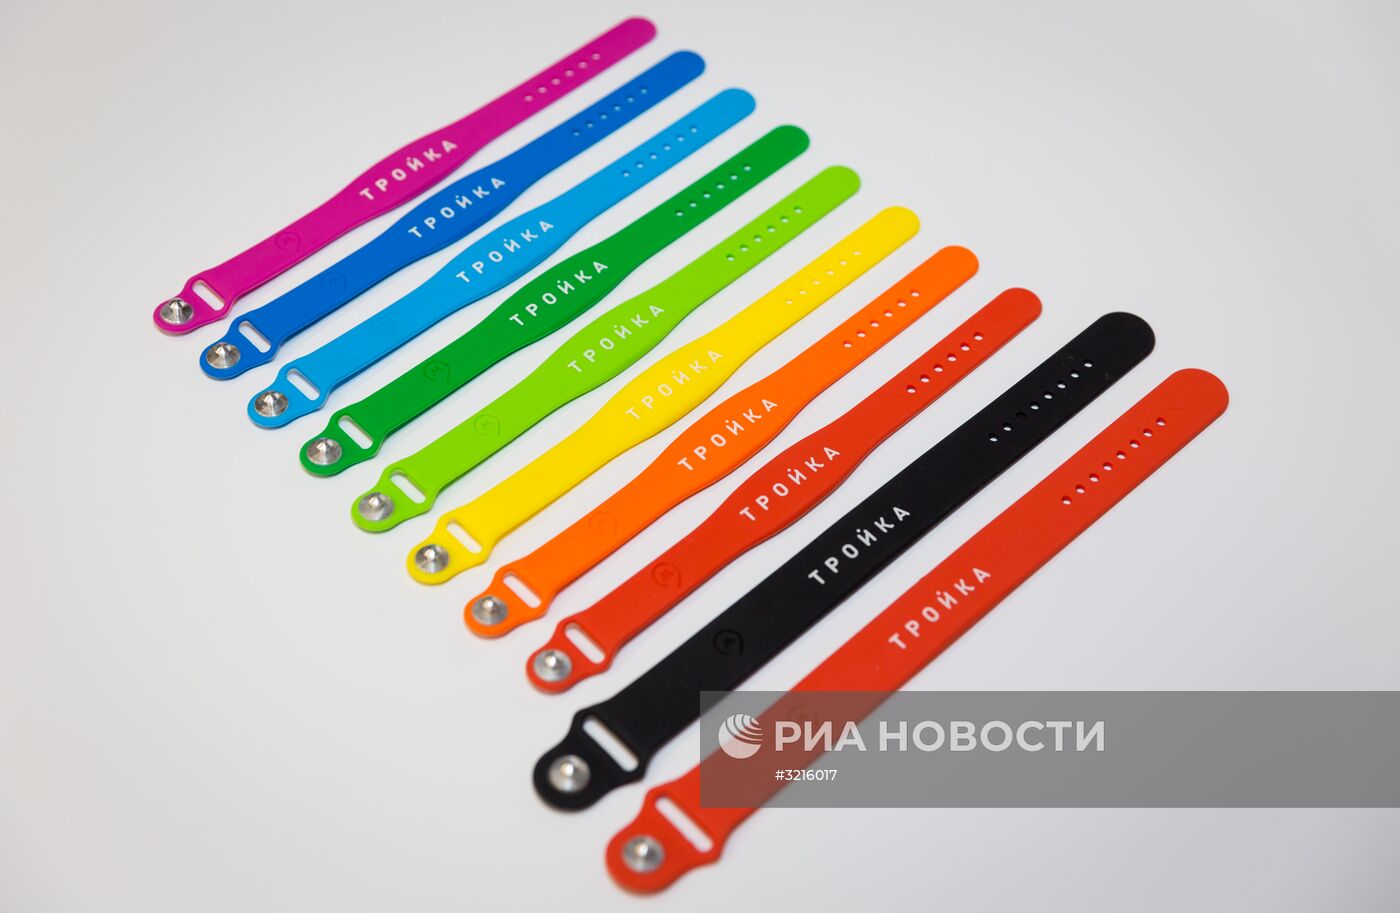 Браслеты "Тройка" начали продавать в московском метро